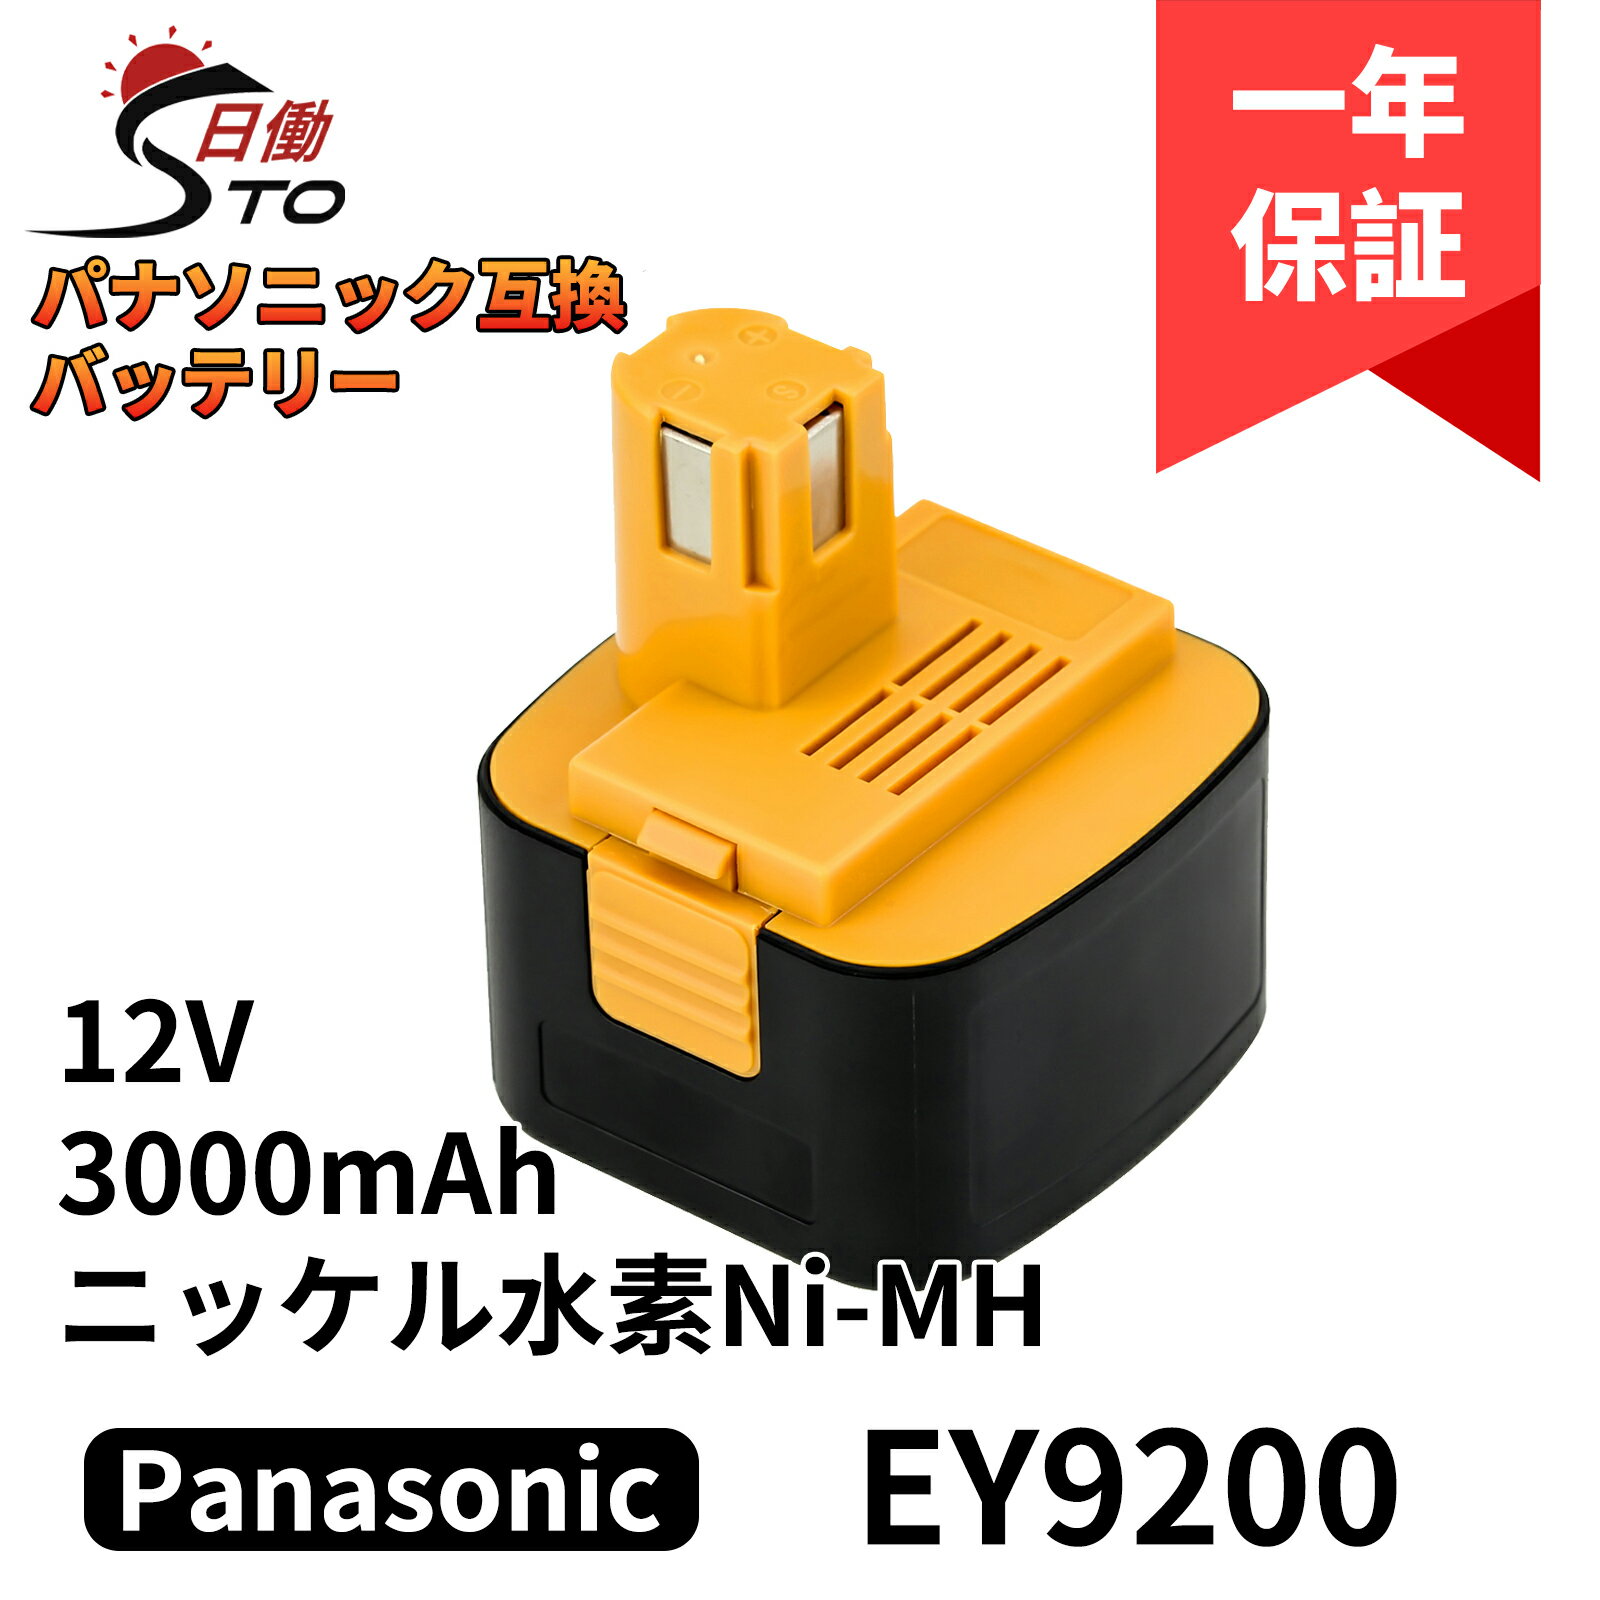 【1年保証】パナソニック 12V 互換バッテリー EY9200 EZ9200 12V 3.0Ah(3000mAh）一個 Panasonic 互換バッテリー ニッケル水素 バッテリー EZ9200 EZ9200S EZ9107 EY9200(B) EY9108(S) EY9201(B) EY9001 EZT901など対応 電動工具用バッテリー レビューで1年保証に延長